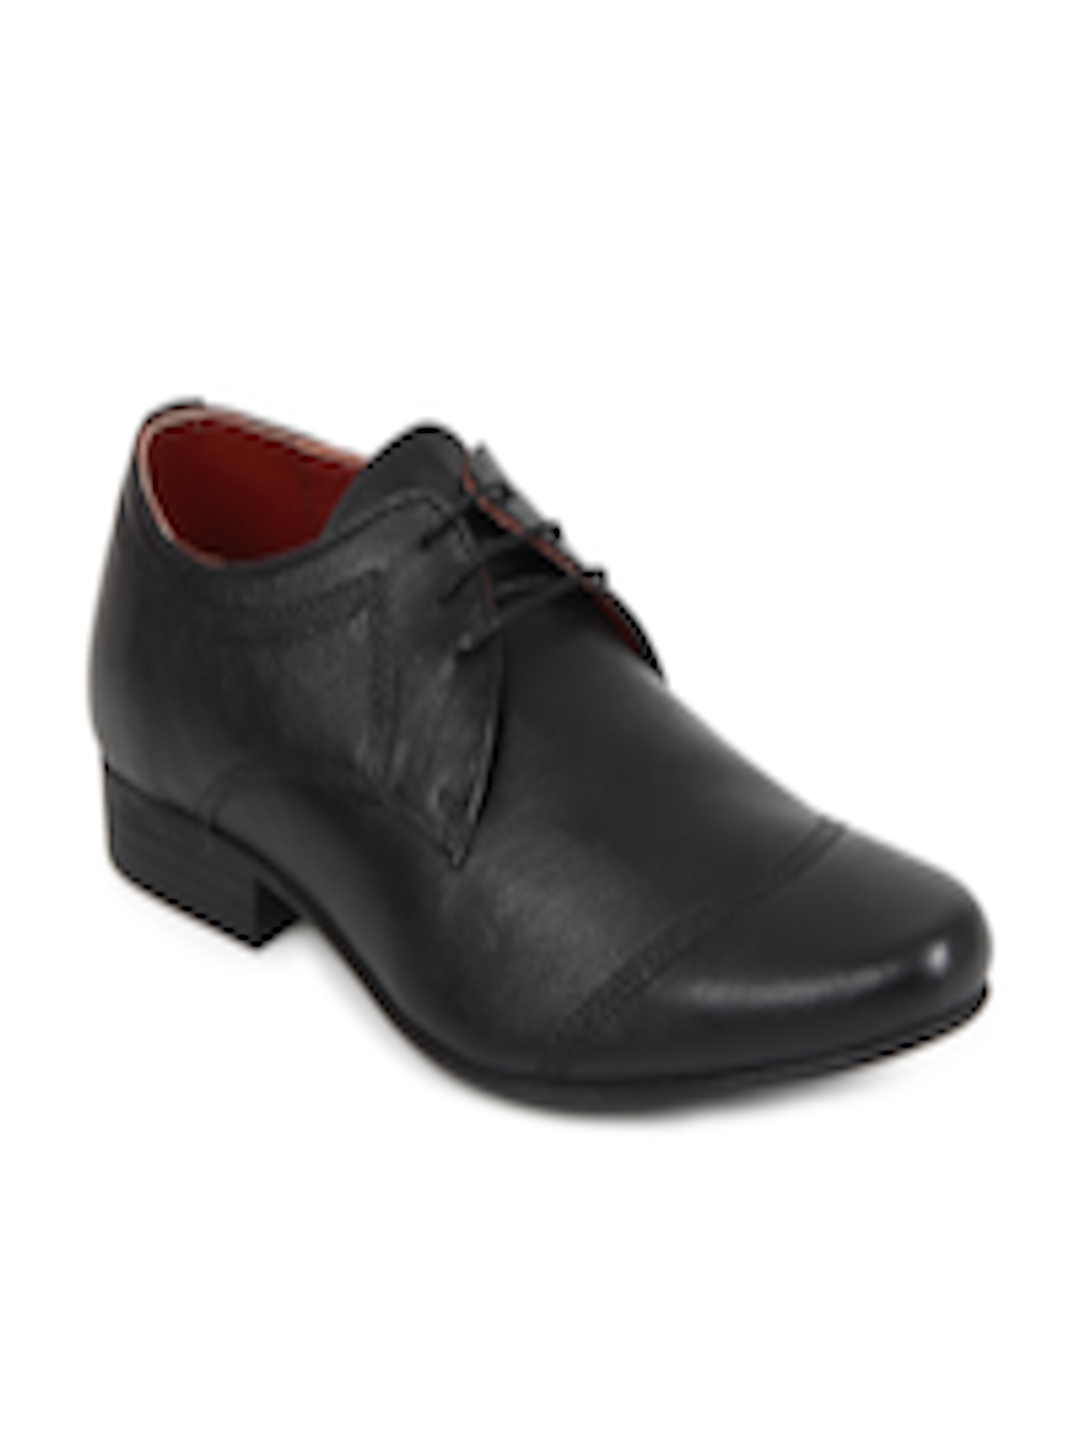 Buy Red Tape Men Black Formal Shoes - Formal Shoes for Men 6502 | Myntra